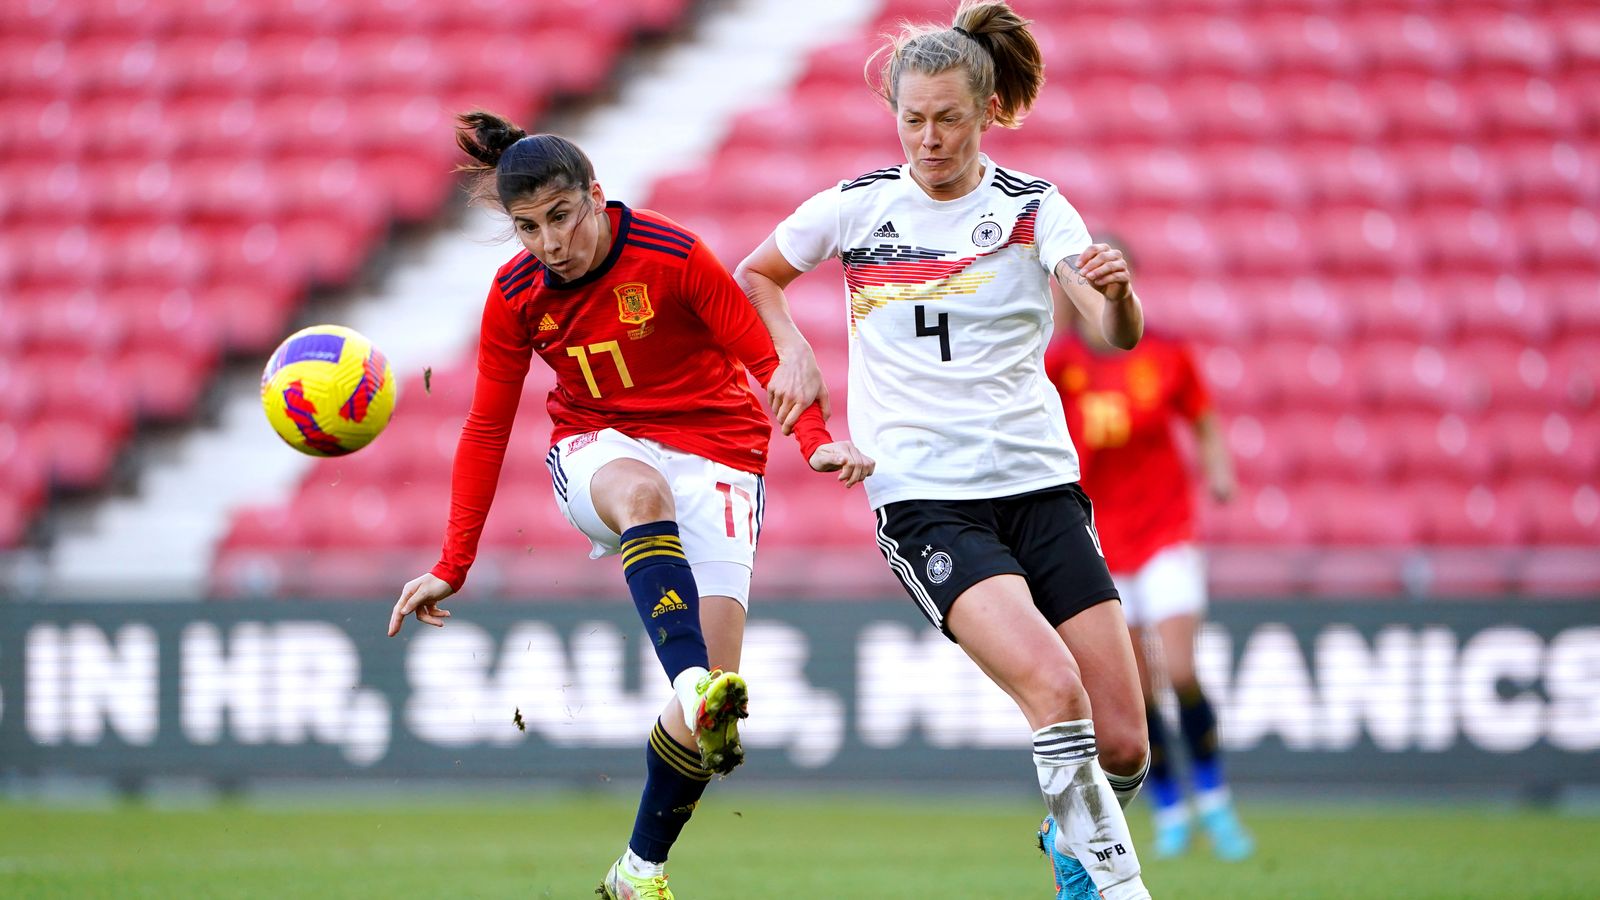 Vorschau auf die Frauen-EM 2022: Spanien und Deutschland starten in Gruppe B |  Fußball Nachrichten